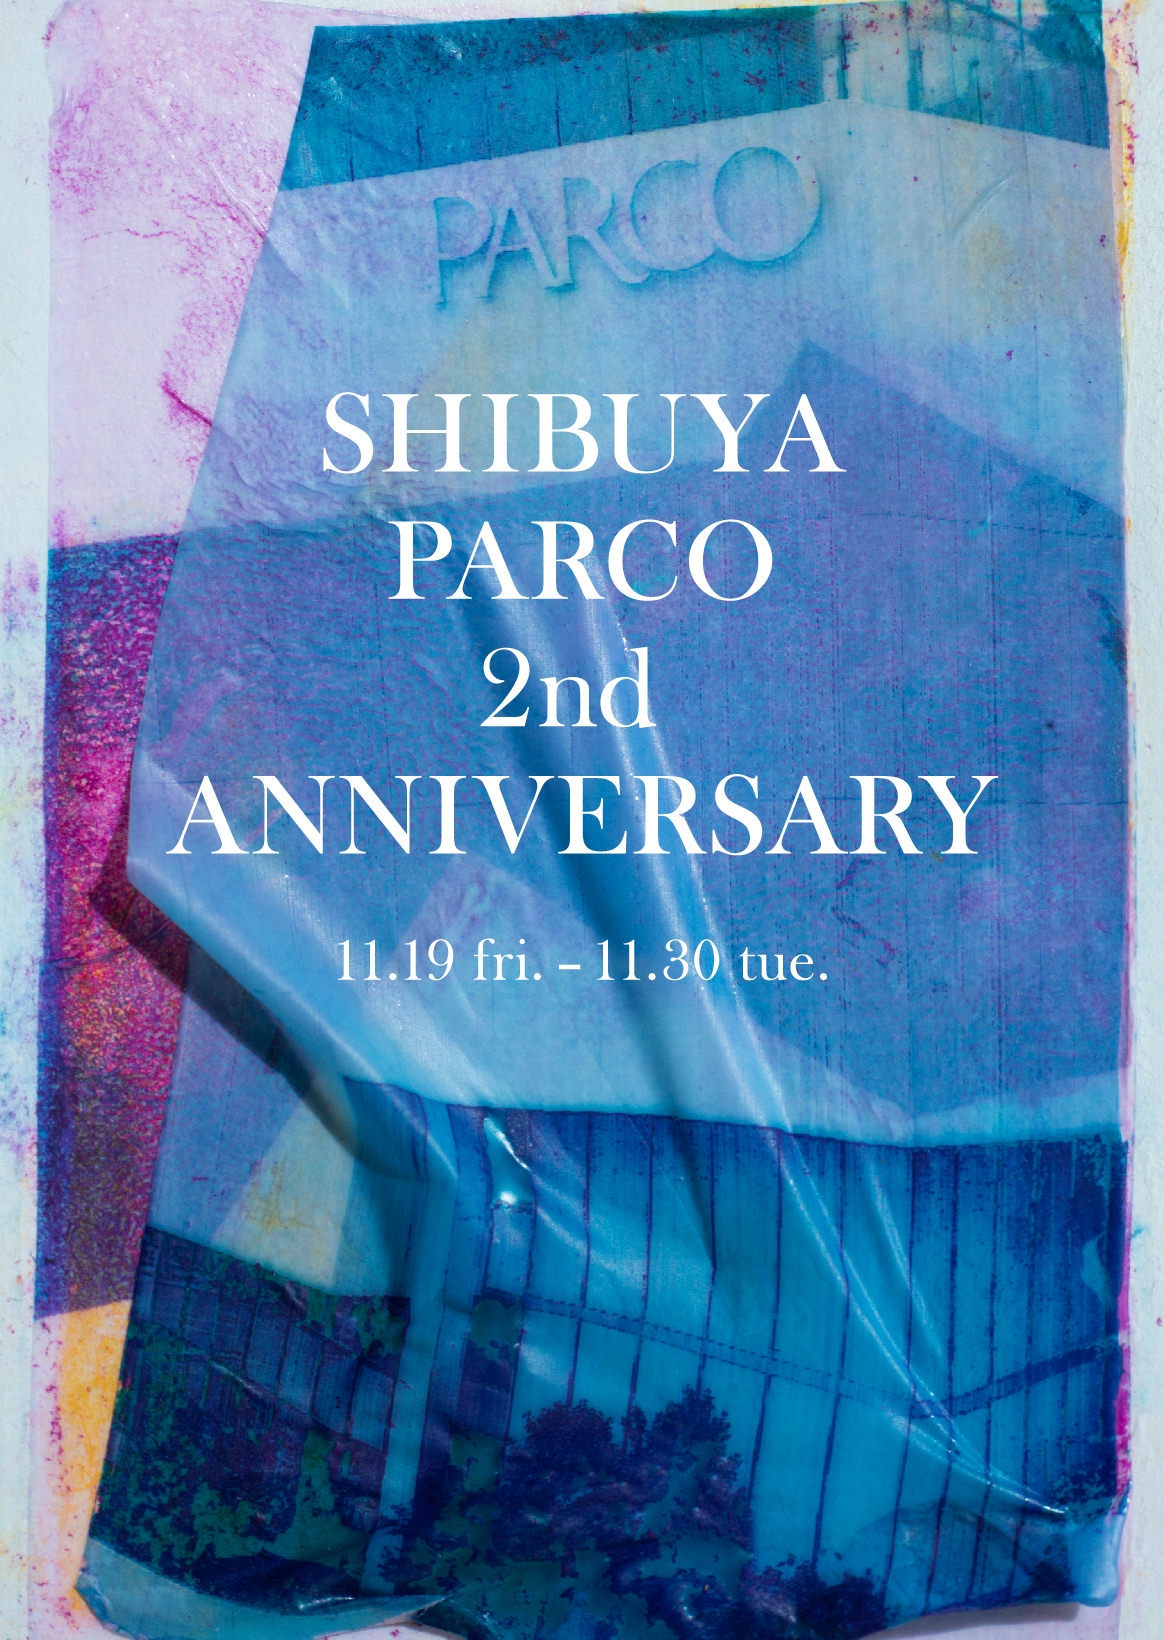 SHIBUYA PARCO 2nd ANNIVERSARY| 特别的为了纪念涩谷PARCO改修2周年的计划被举行